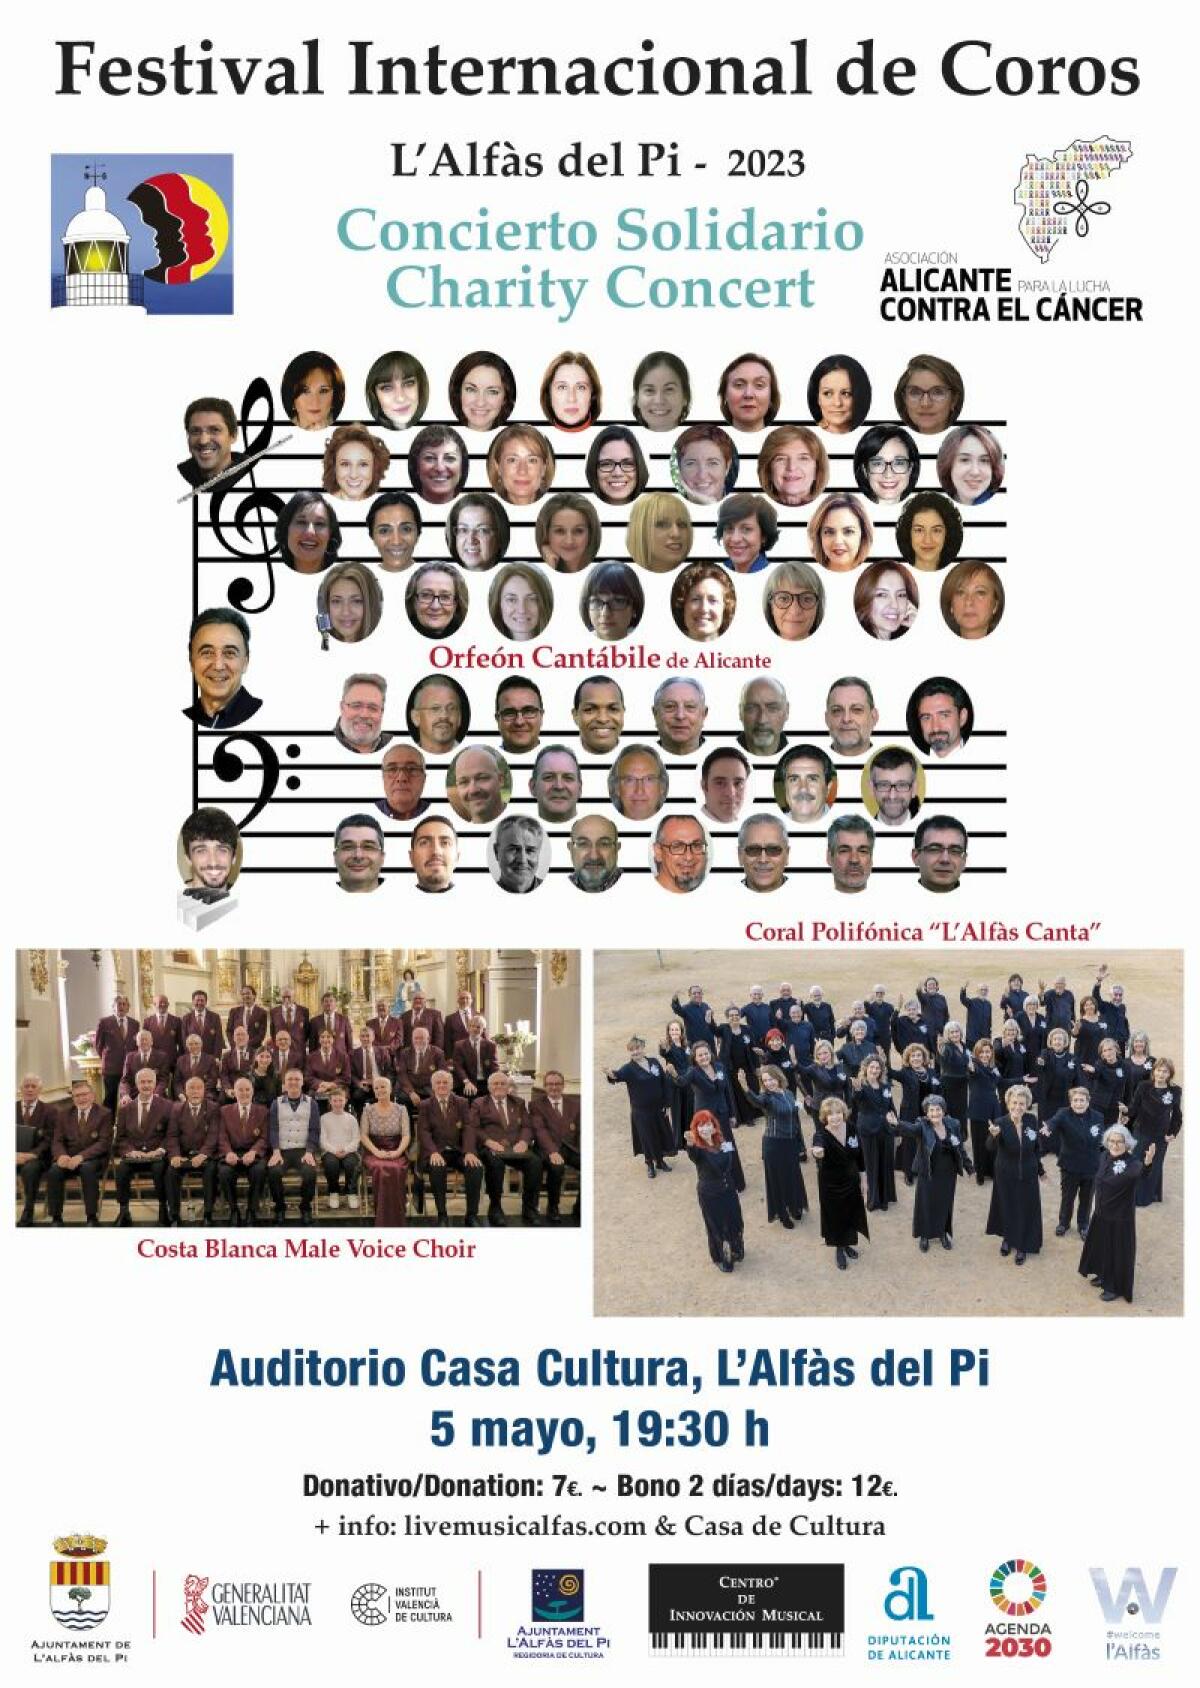 El Festival Internacional de Coros de l’Alfàs 2023 ofrece dos conciertos solidarios los días 5 y 6 de mayo